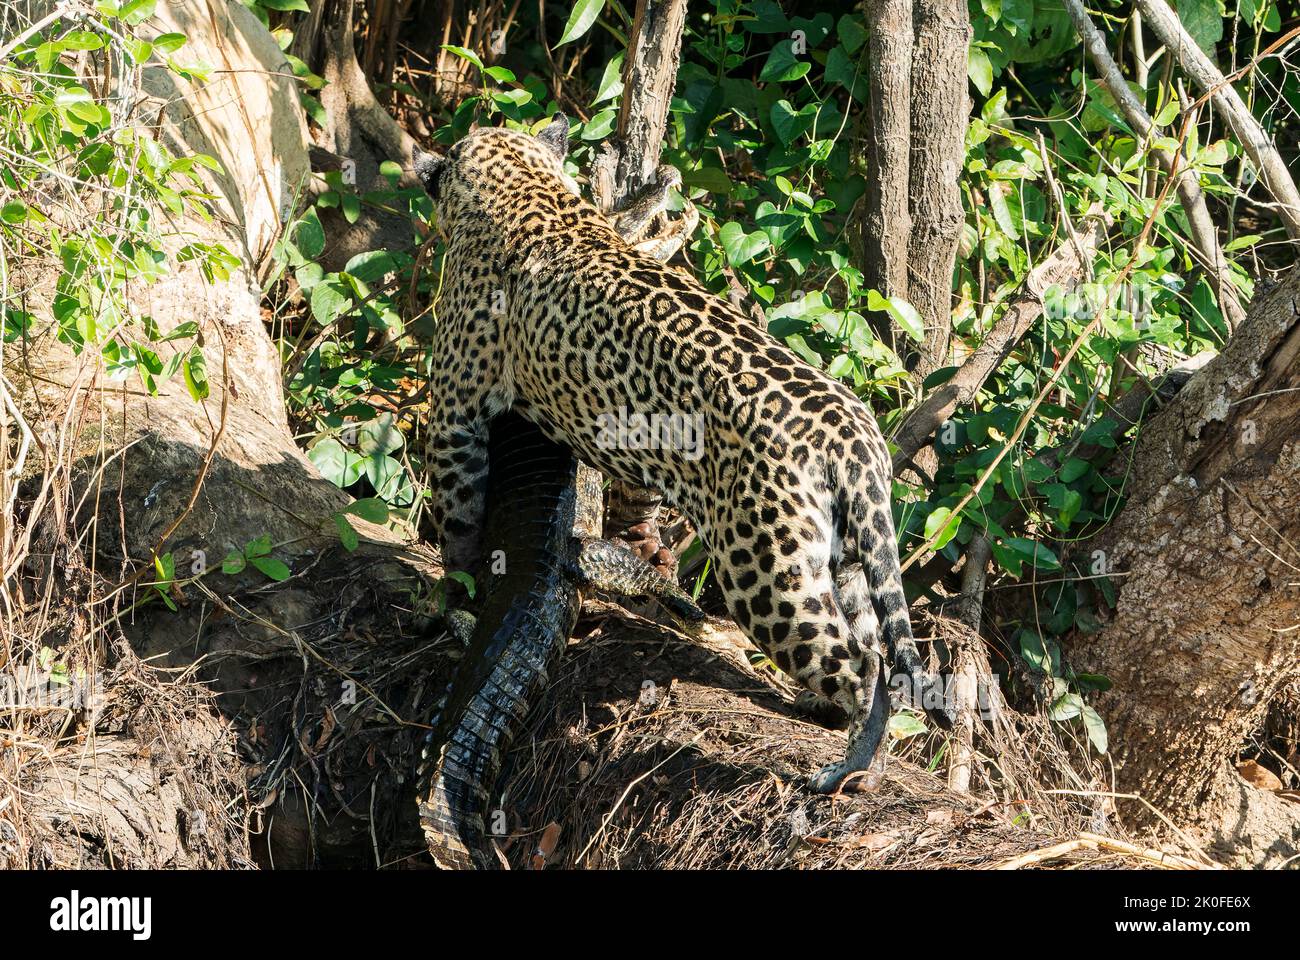 Jaguar, Panthera onca, adulte porteur de la proie caiman, Pantanal, Brésil Banque D'Images